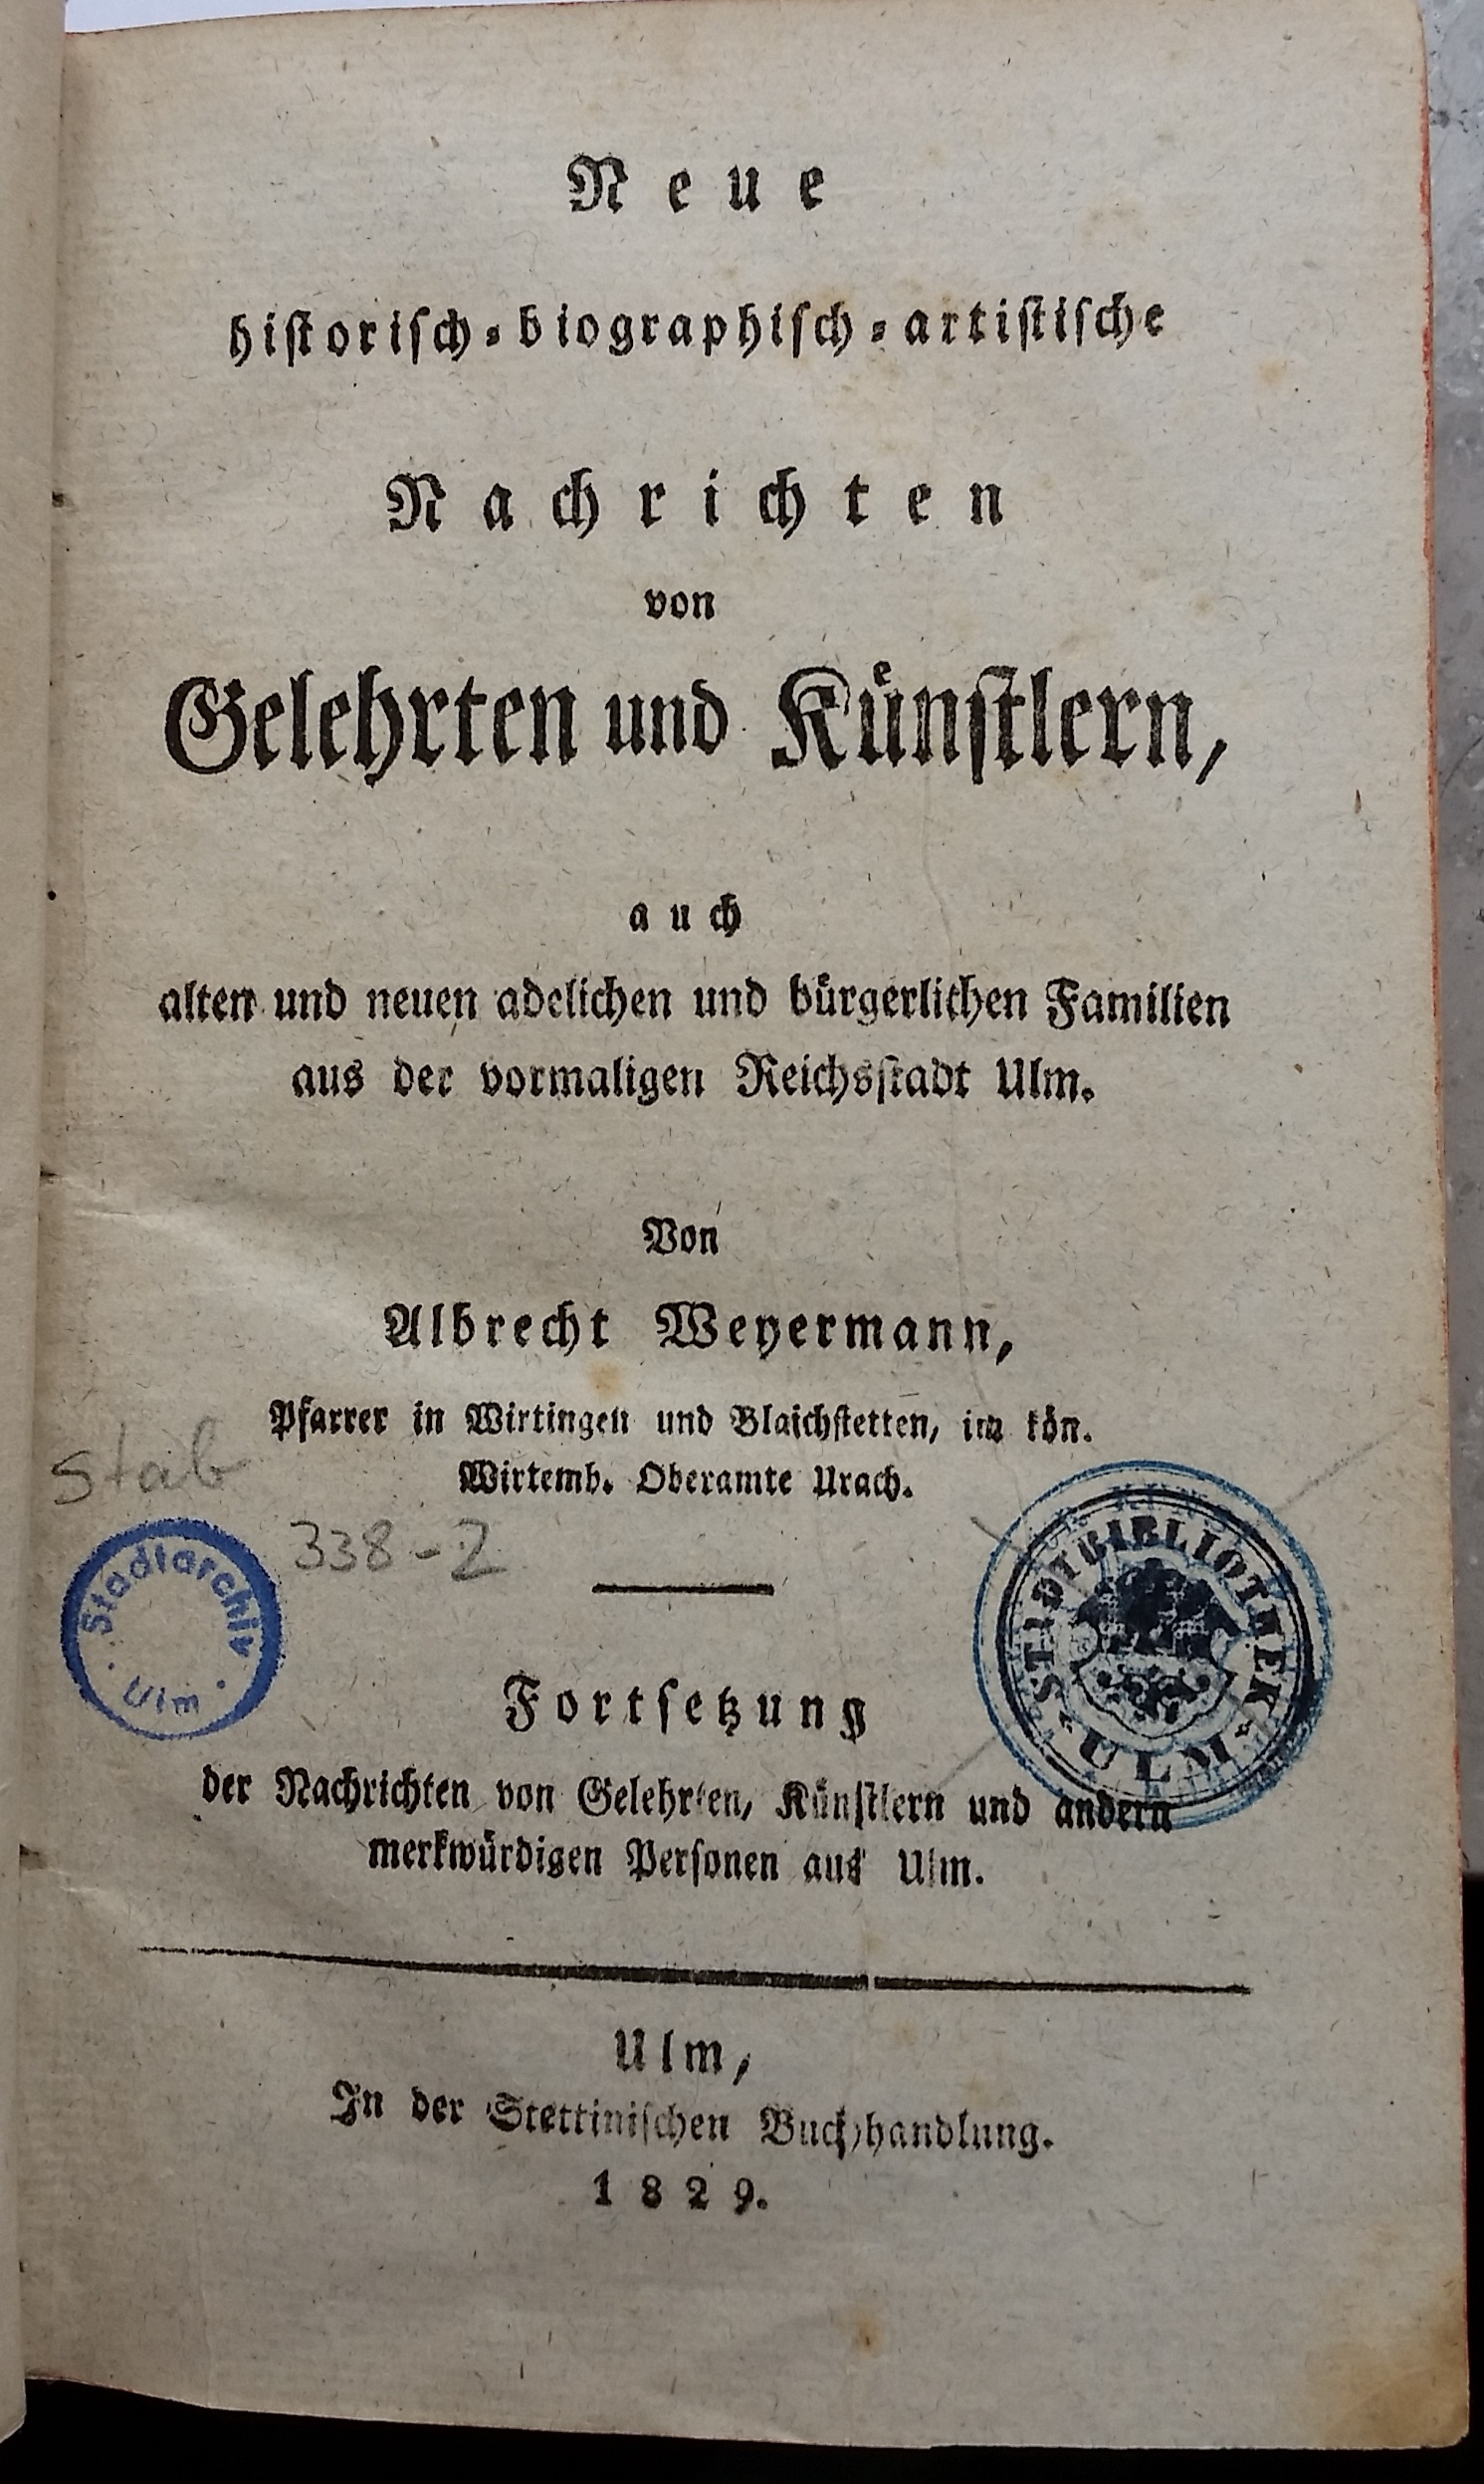 Glockengiesser, Wolfgang Theopilius, Stadtphysikus in Ulm